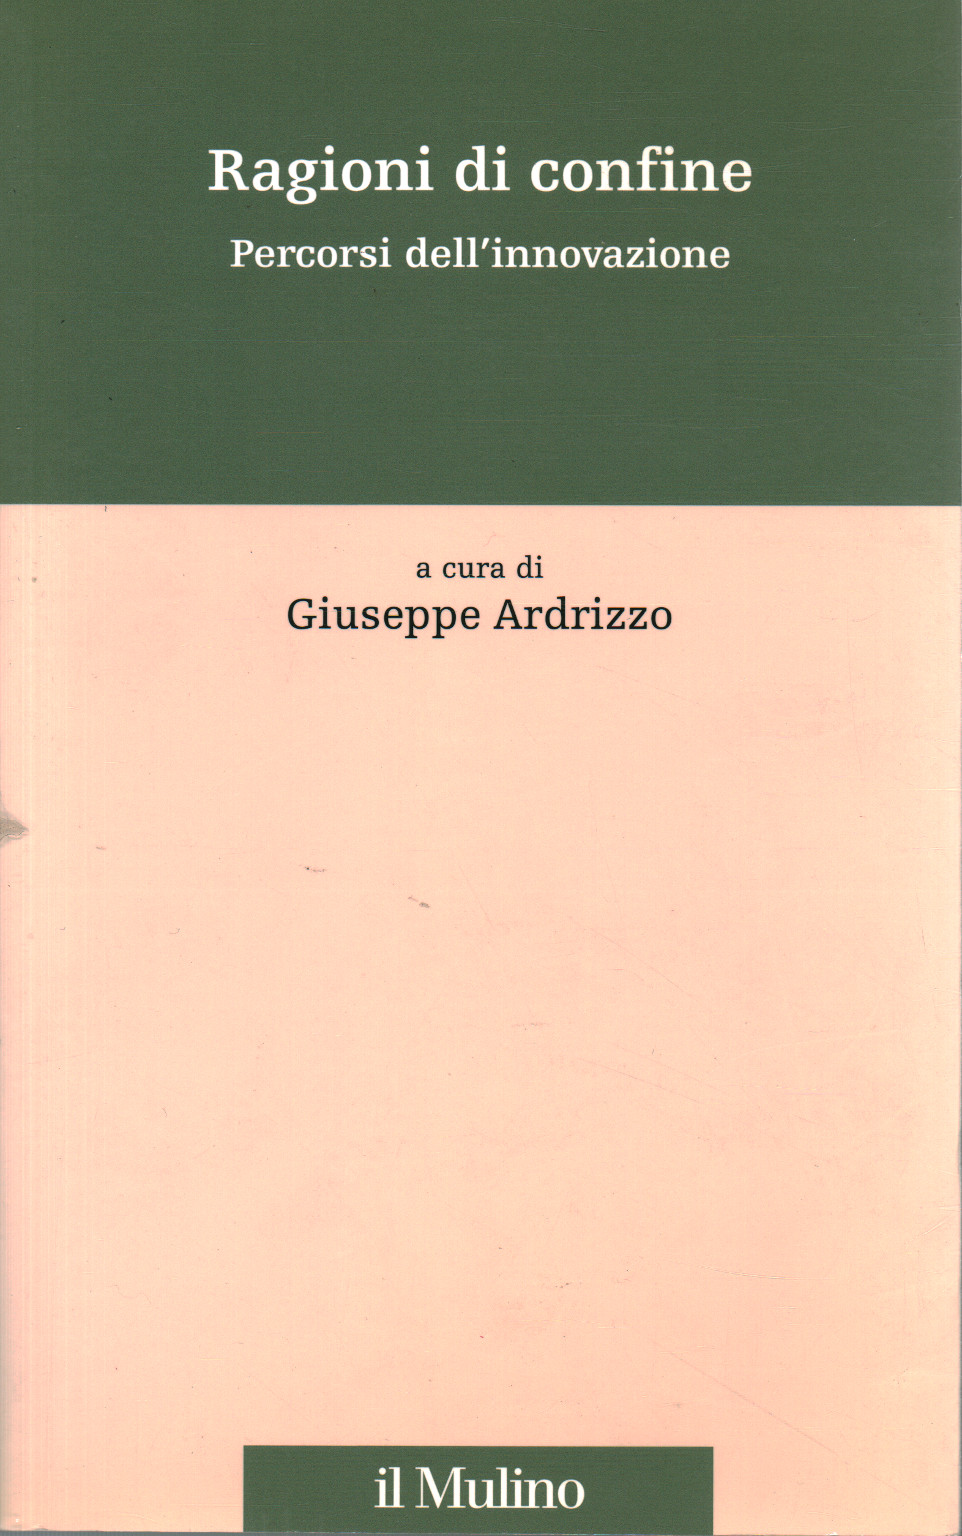 Border reasons, Giuseppe Ardrizzo